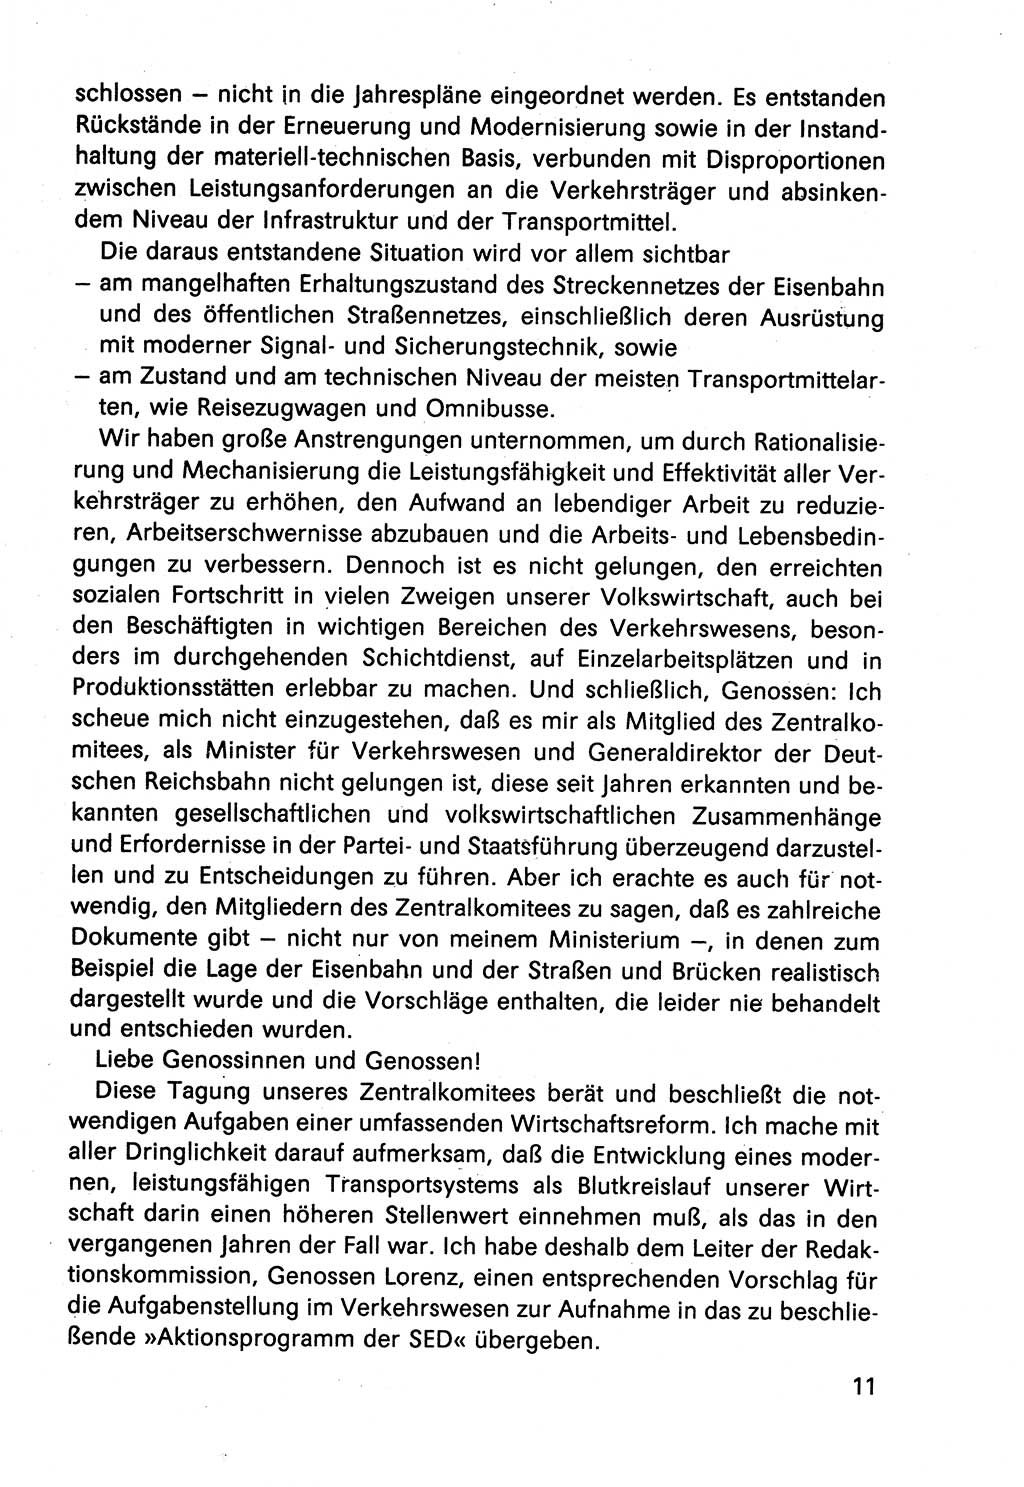 Diskussionsbeiträge, 10. Tagung des ZK (Zentralkomitee) der SED (Sozialistische Einheitspartei Deutschlands) [Deutsche Demokratische Republik (DDR)] 1989, Seite 11 (Disk.-Beitr. 10. Tg. ZK SED DDR 1989, S. 11)